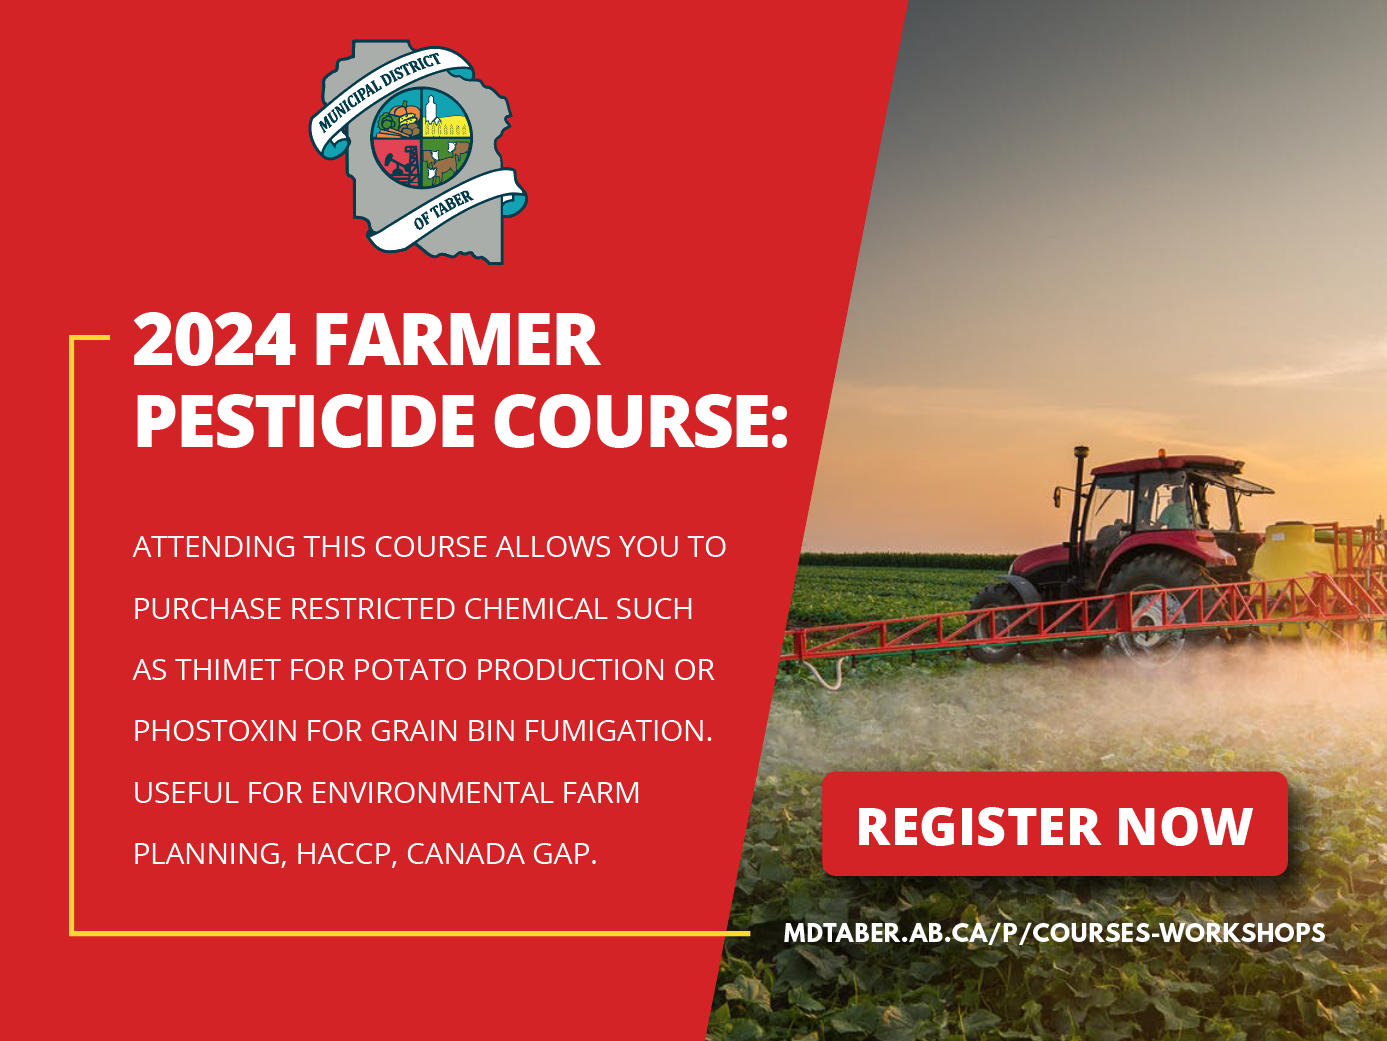 Register for the 2024 Farmer Pesticide Course